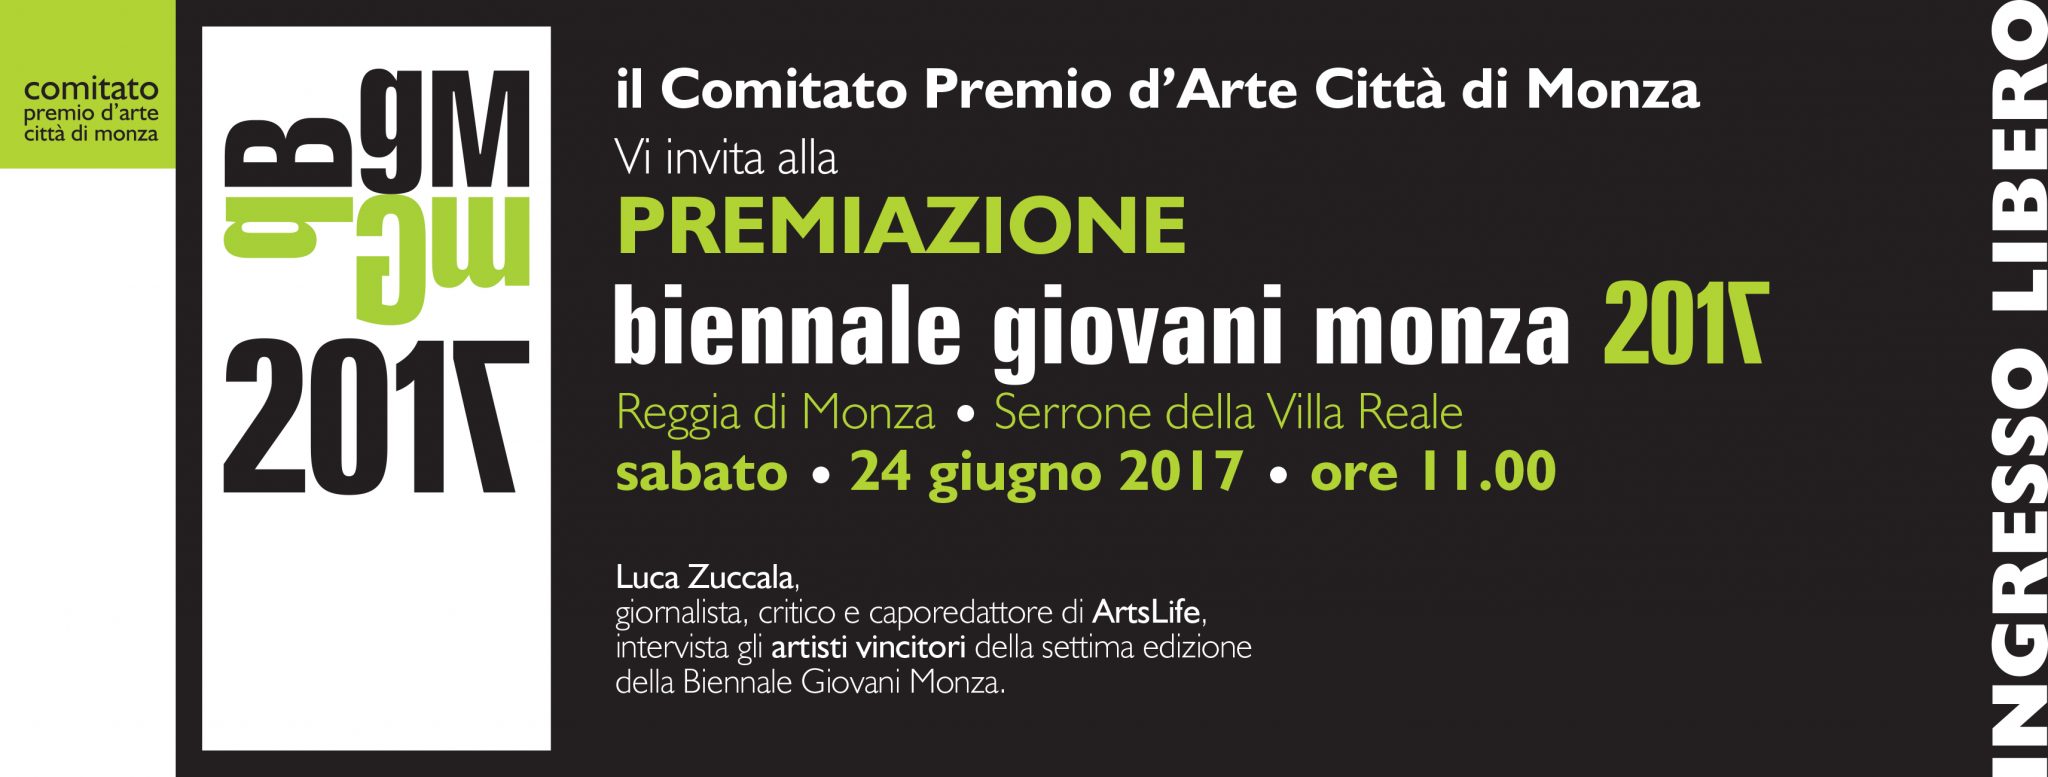 Premiazione Biennale Giovani Monza 2017